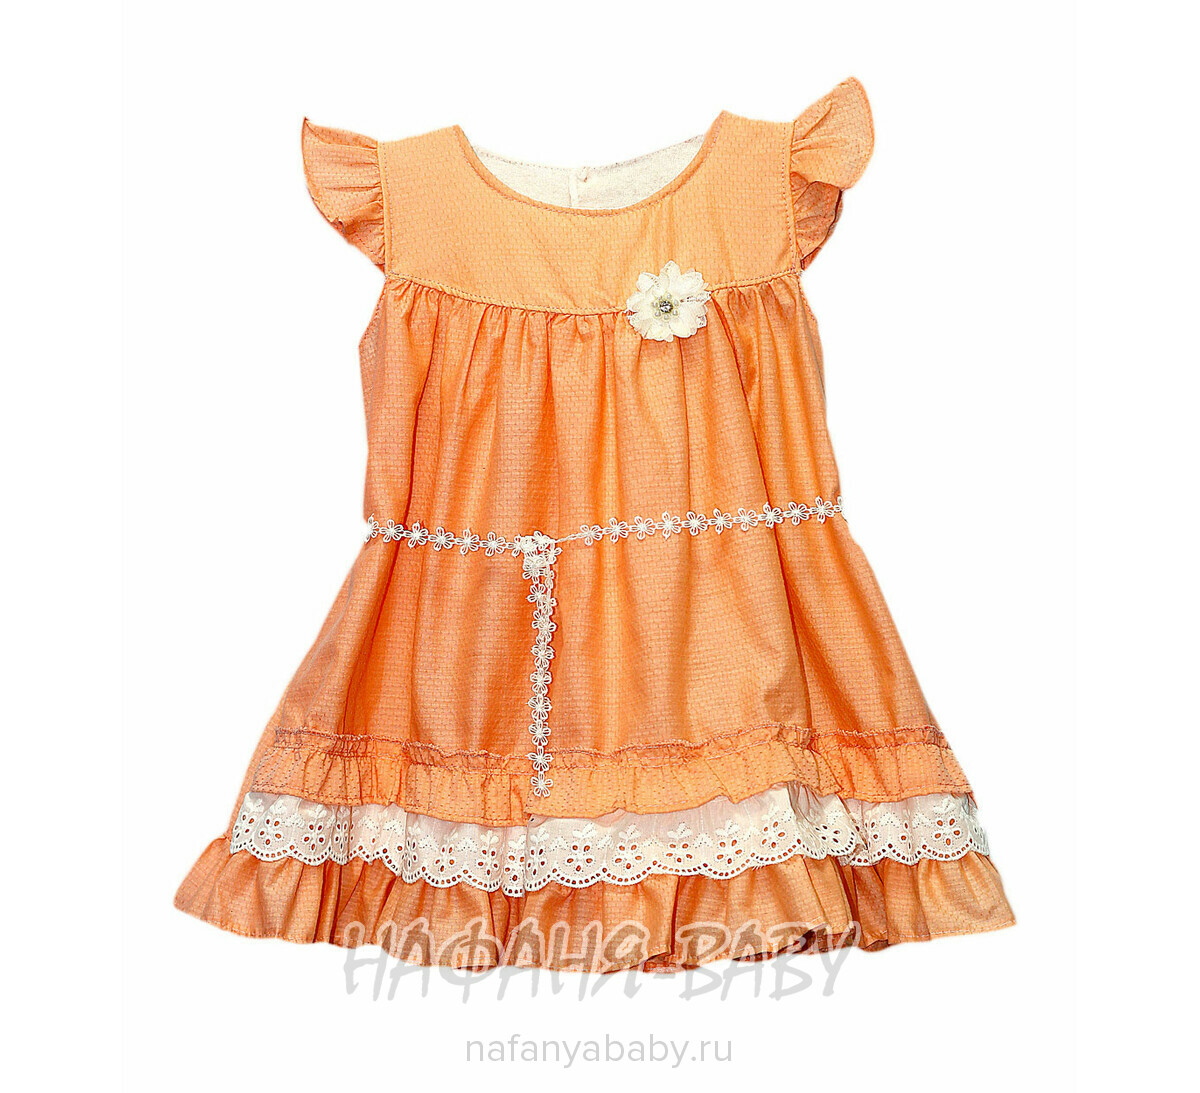 Детское платье Becol арт: 159, 1-4 года, 0-12 мес, цвет персиковый, оптом Турция